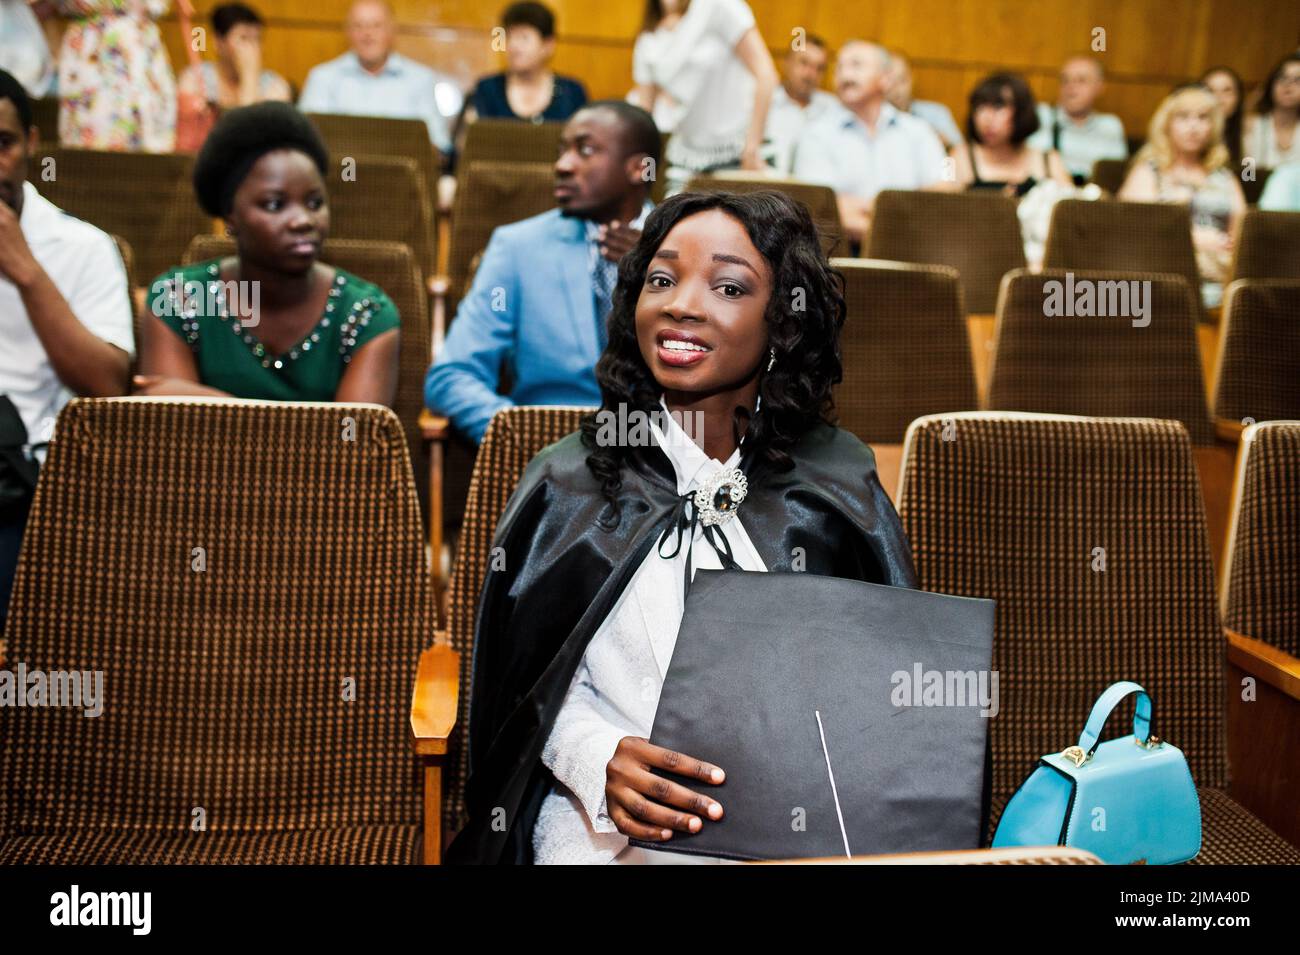 Glückliches schönes schwarze afroamerikanische Mädchen mit Hut und Mantel Absolventen bei Zeremonie Schloss Stockfoto